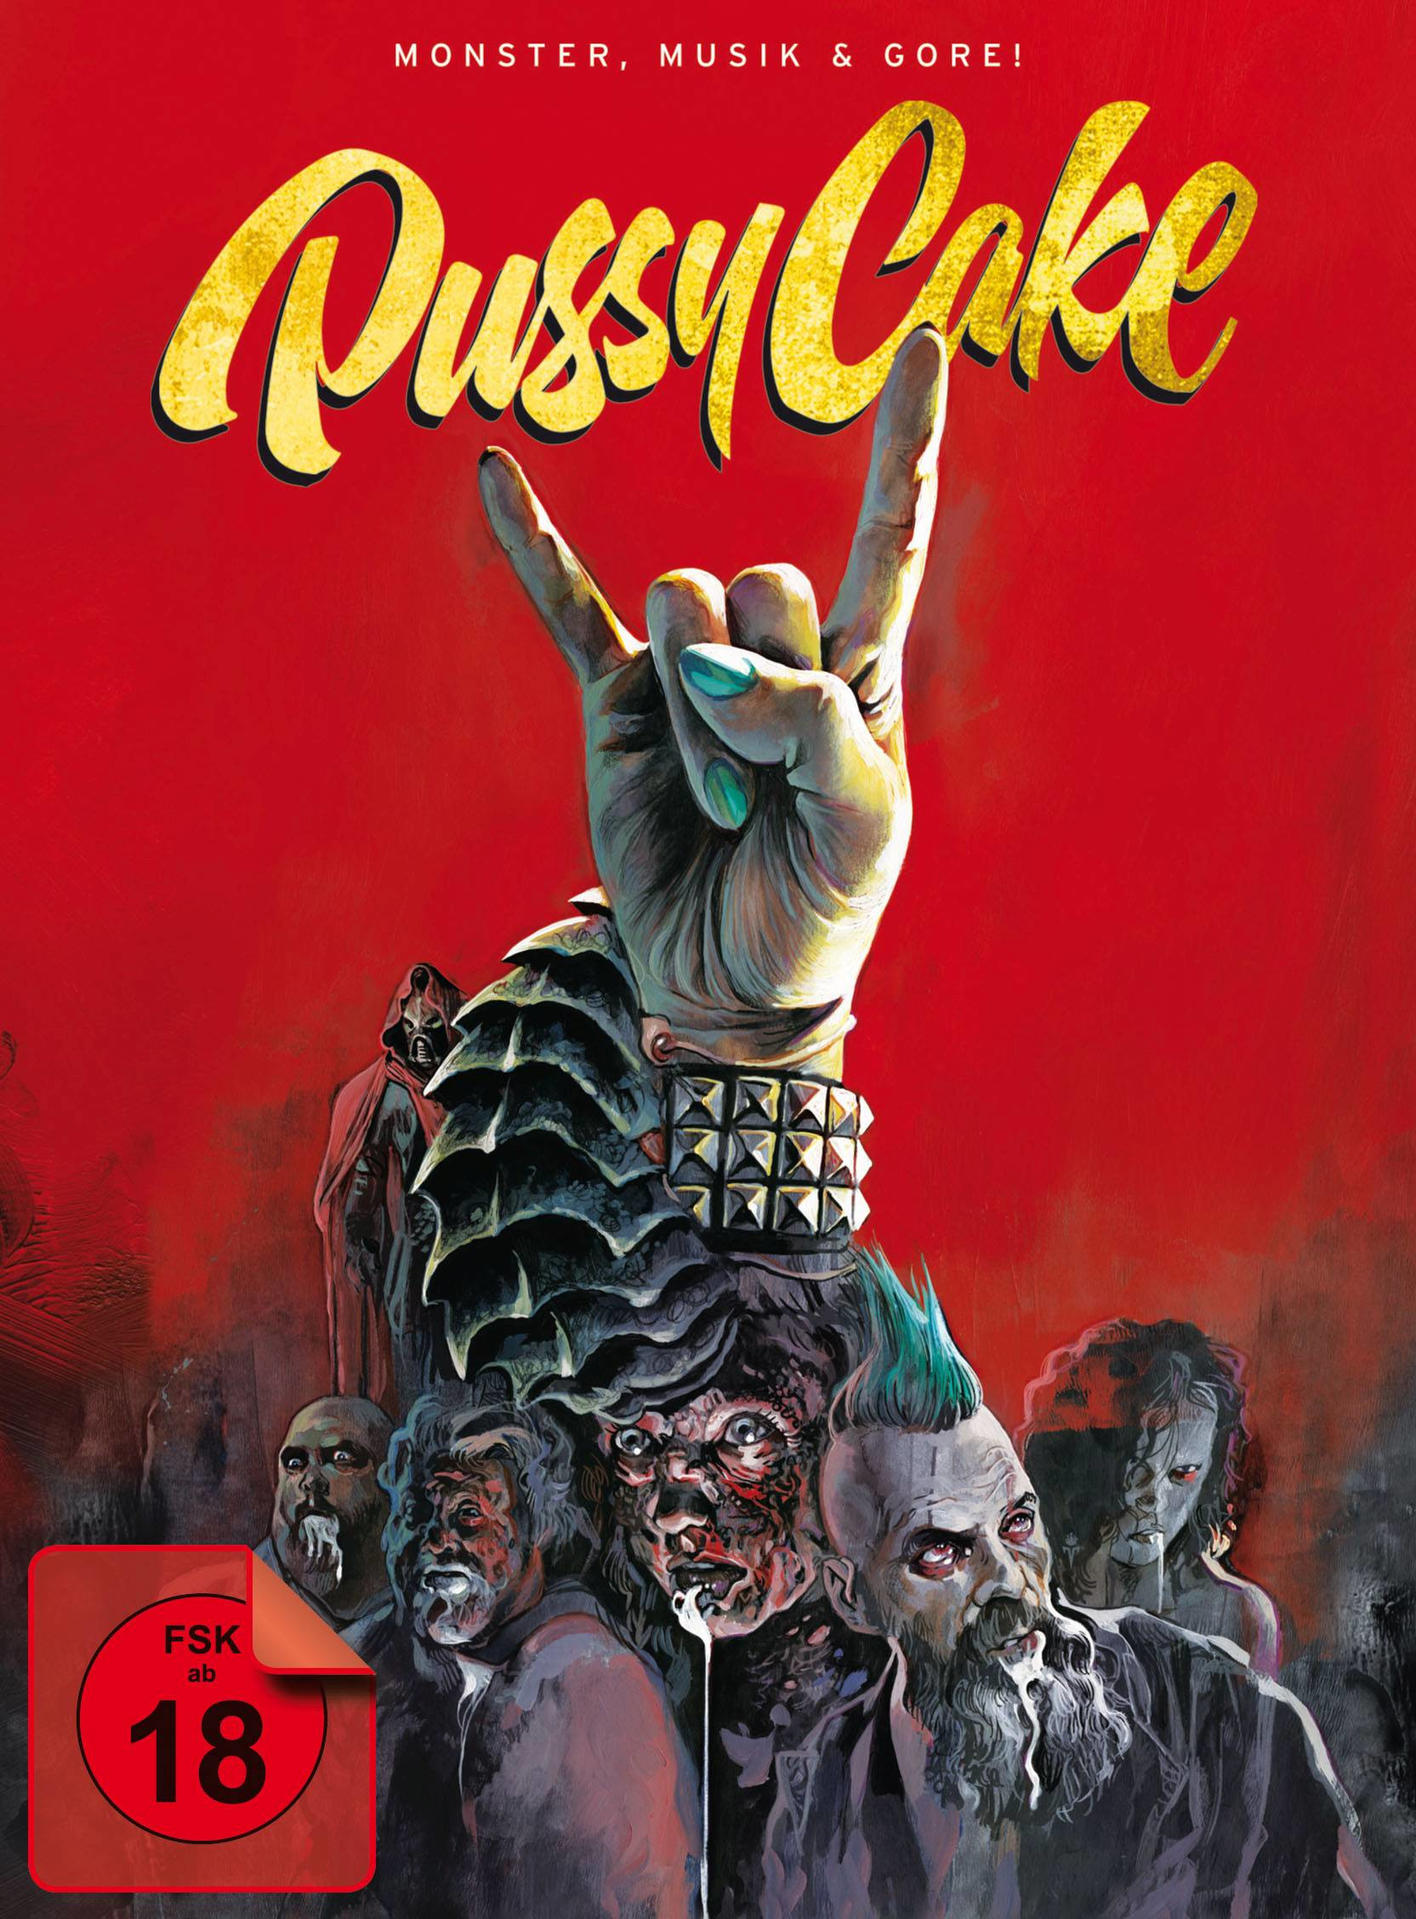 Pussycake-Monster,Musik und Gore! Blu-ray DVD 